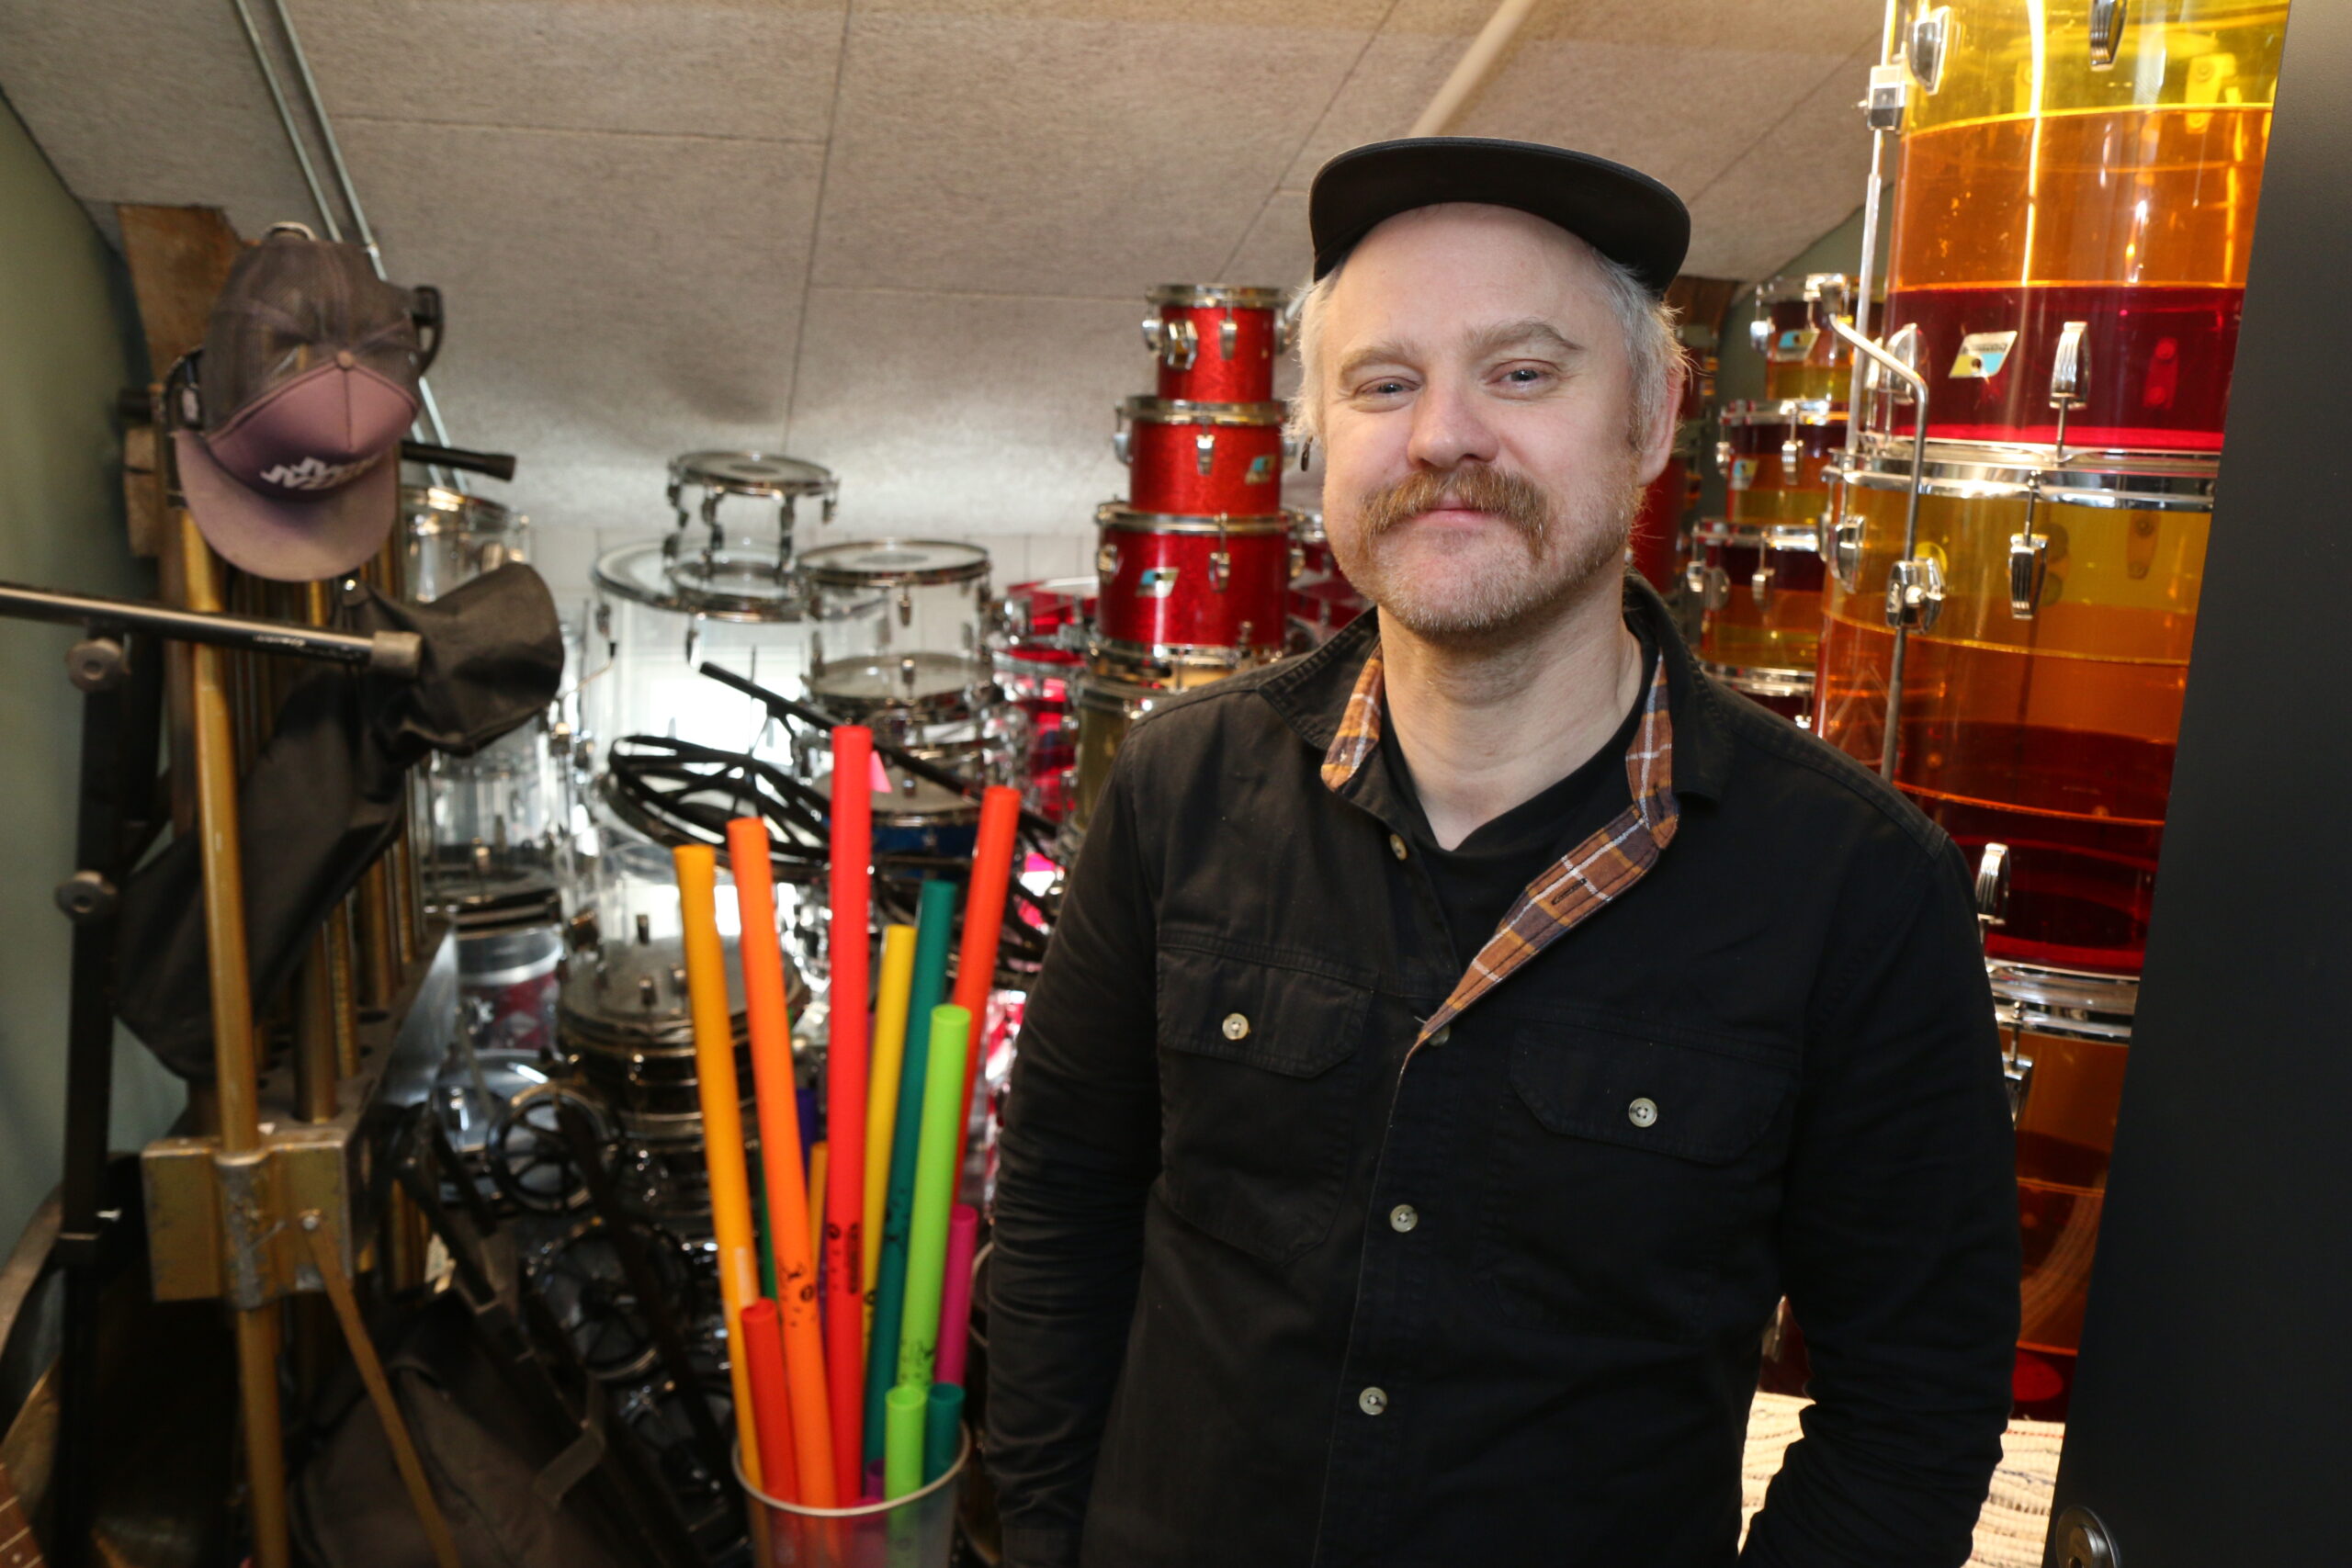 Mann med caps og sort skjorte foran stabler med trommer